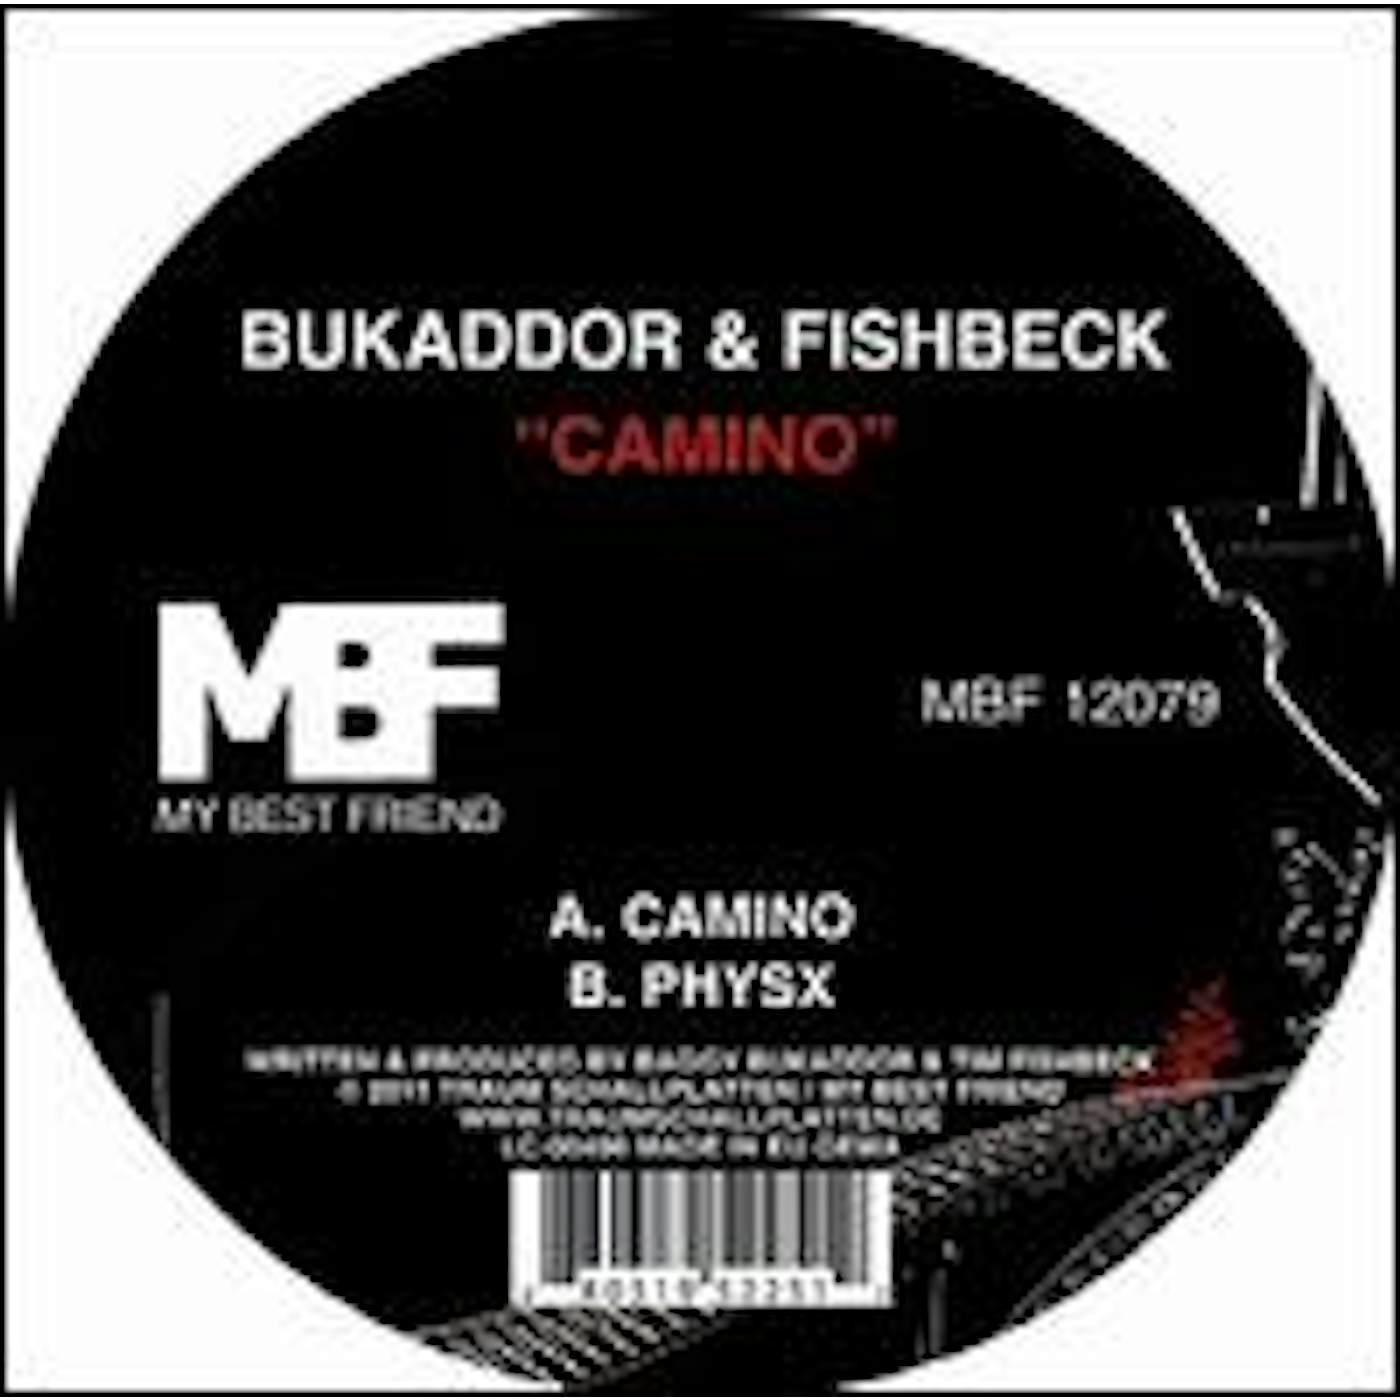 Bukaddor & Fishbeck Camino Vinyl Record